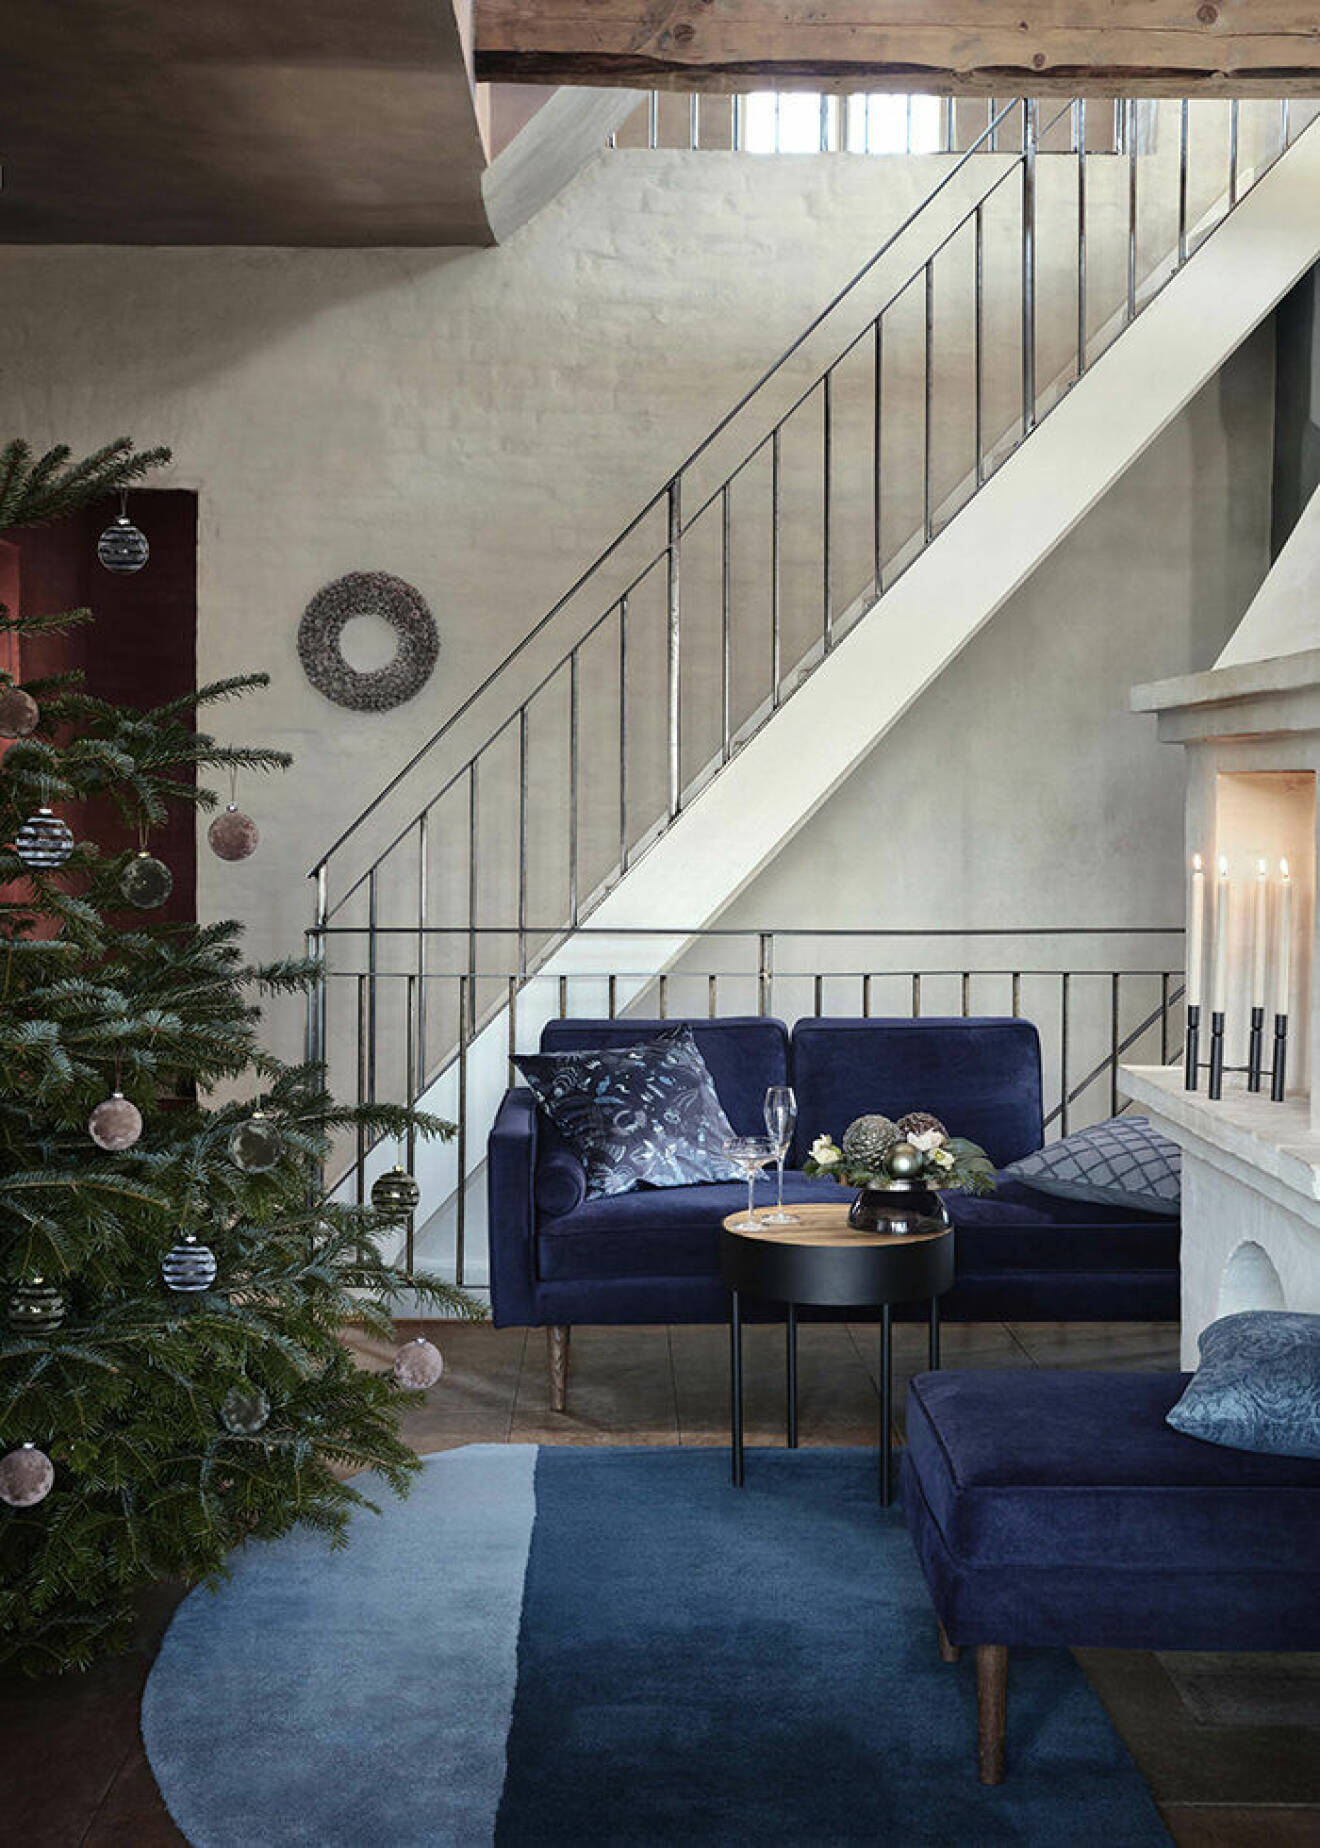 Väl valda detaljer skapar julstämning hos Broste Copenhagen julen 2019